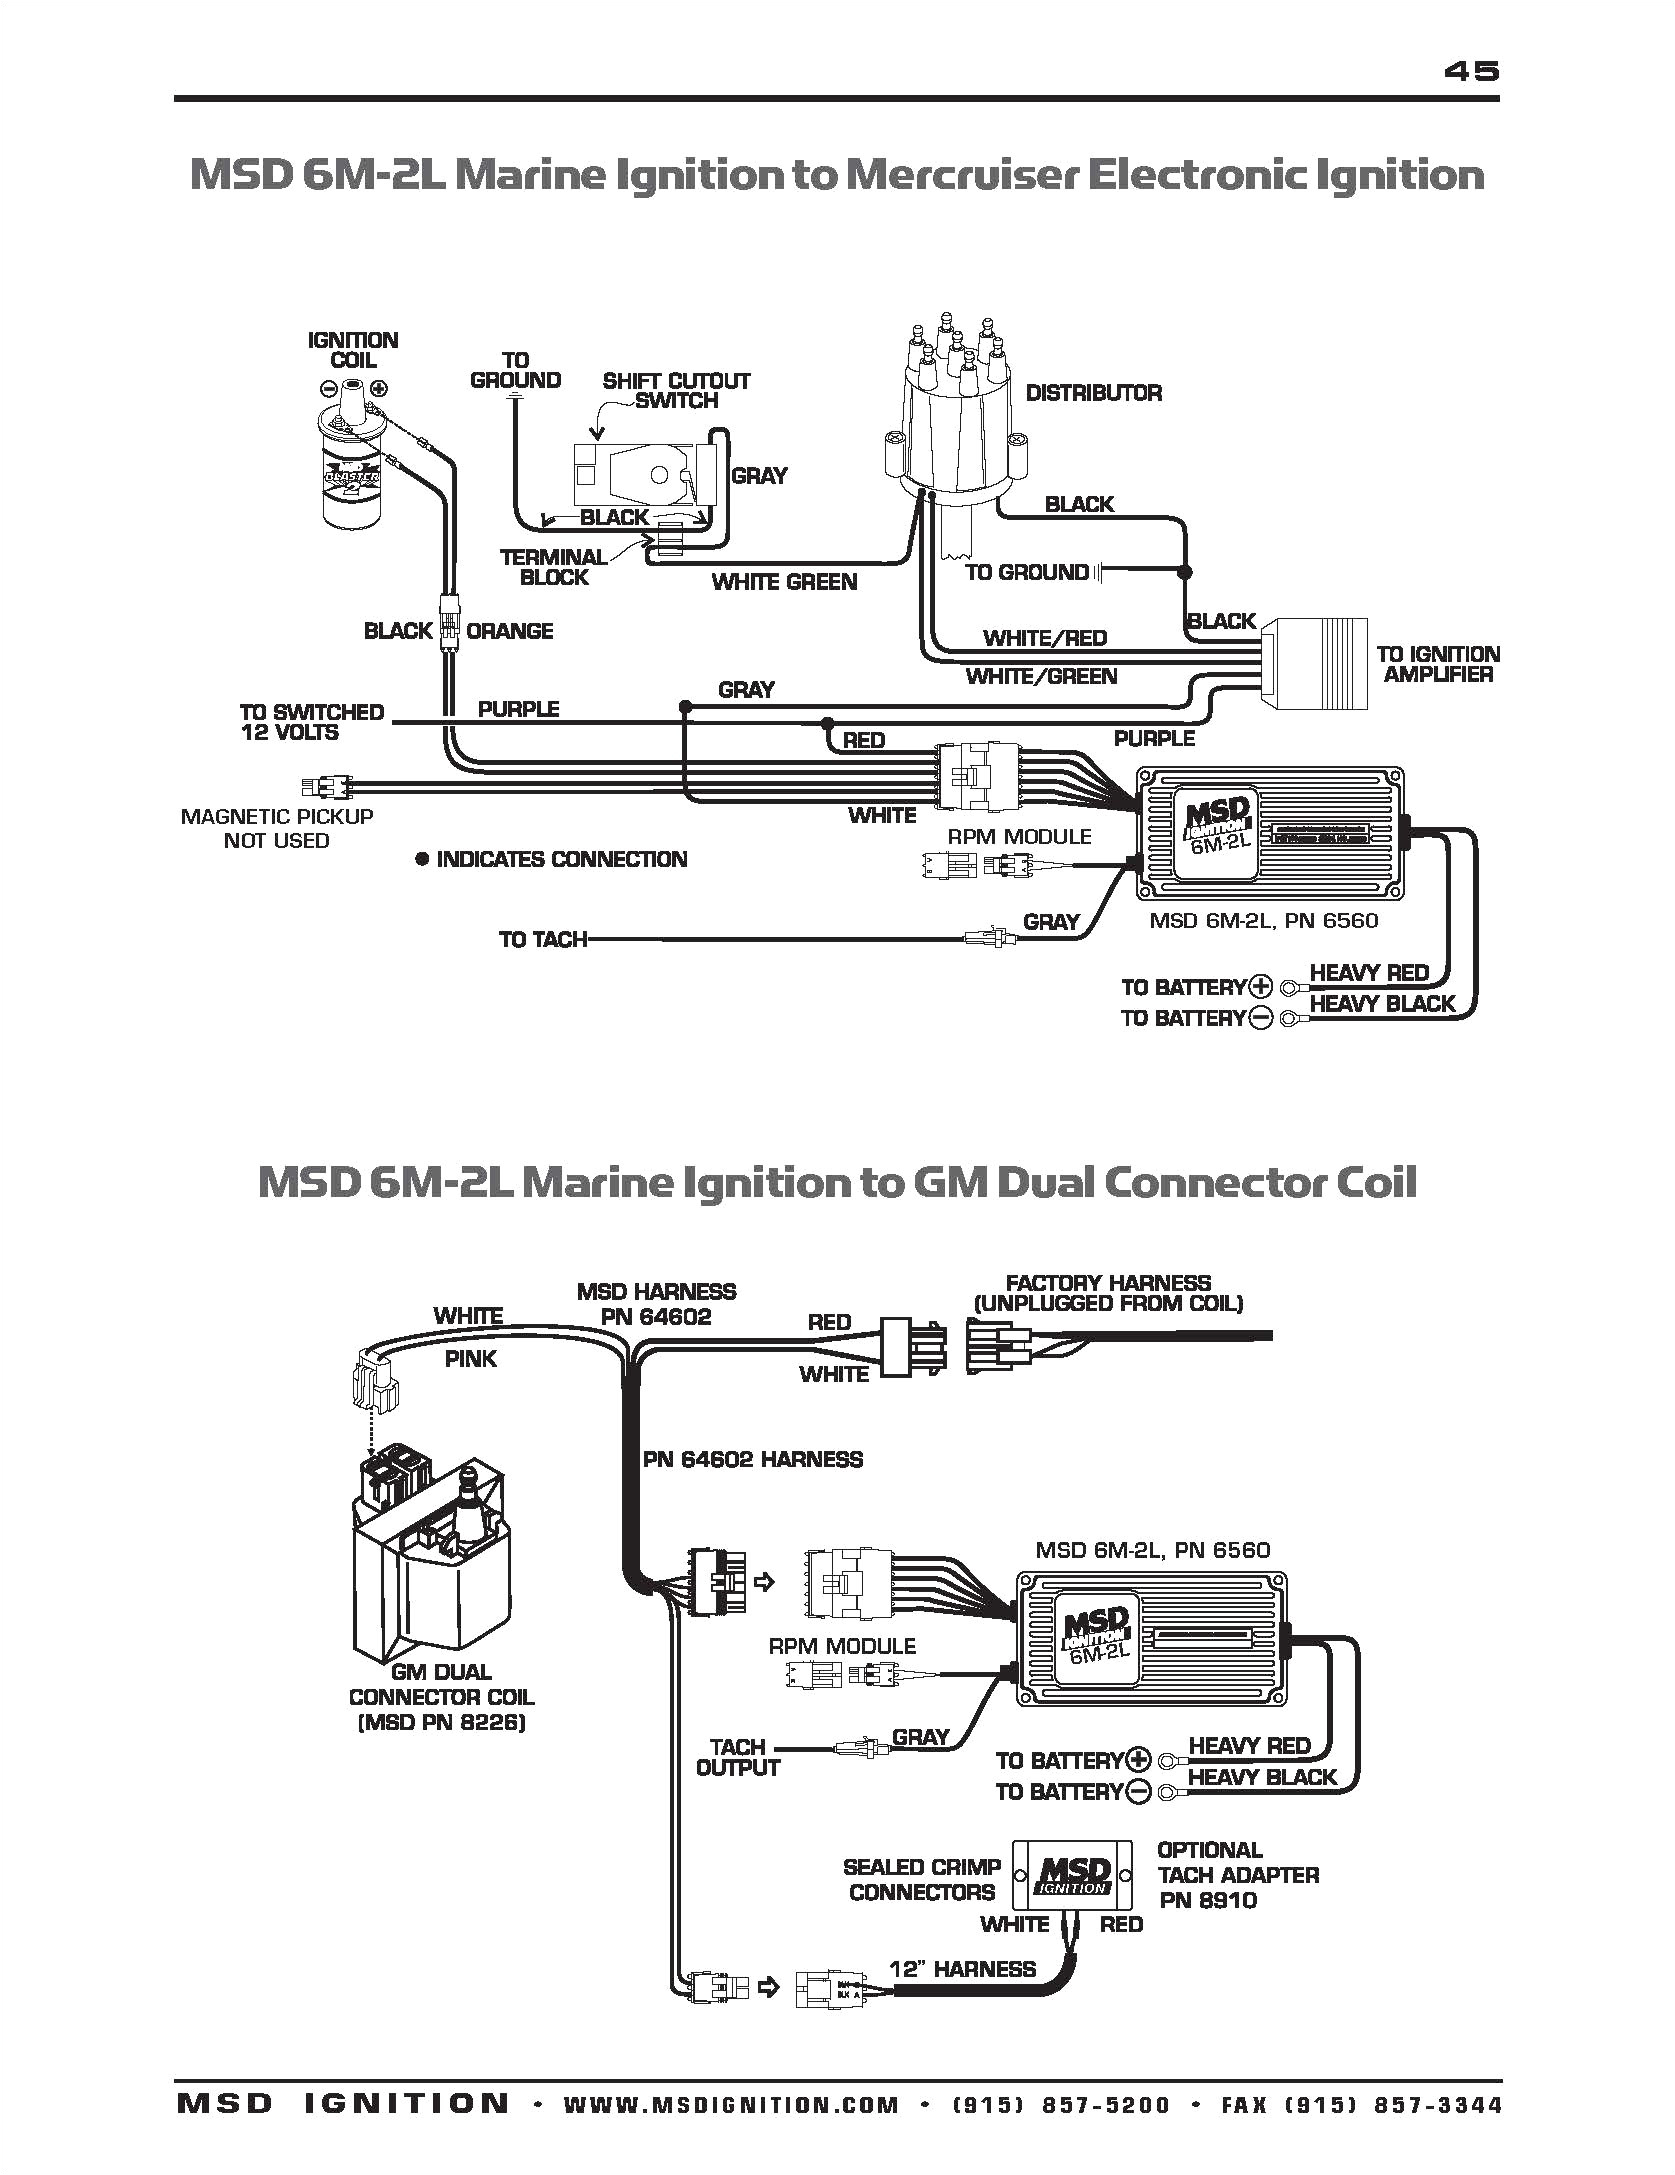 msd wiring diagram 6m 2 wiring diagrams msd 6m 2 wiring diagram ignition wiring diagram